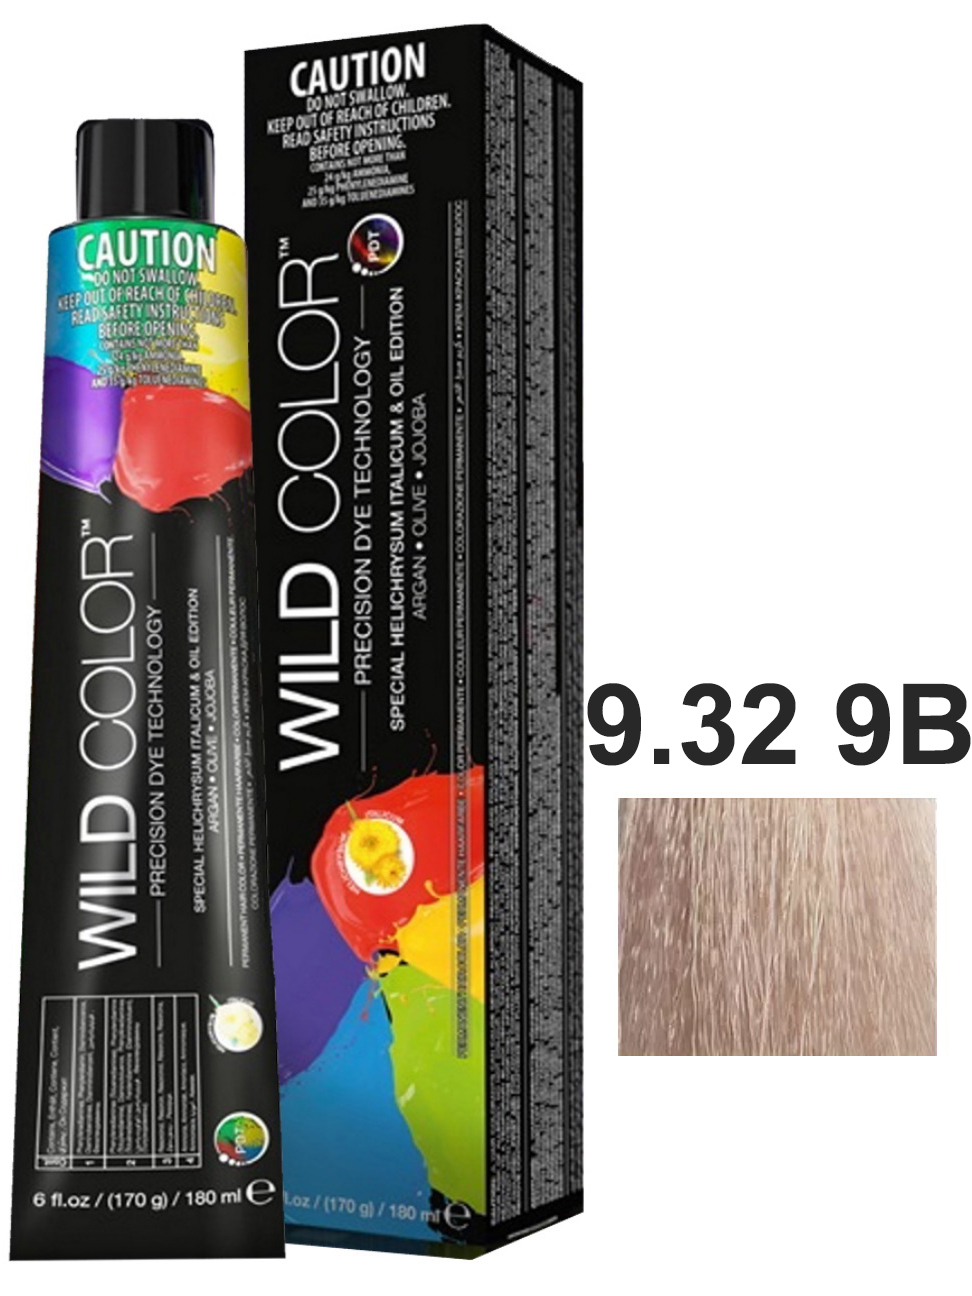 Крем-краска для волос WildColor PERMANENT COLOR 9.32 9B очень светлый блонд бежевый 180 мл возвращение не гарантируется